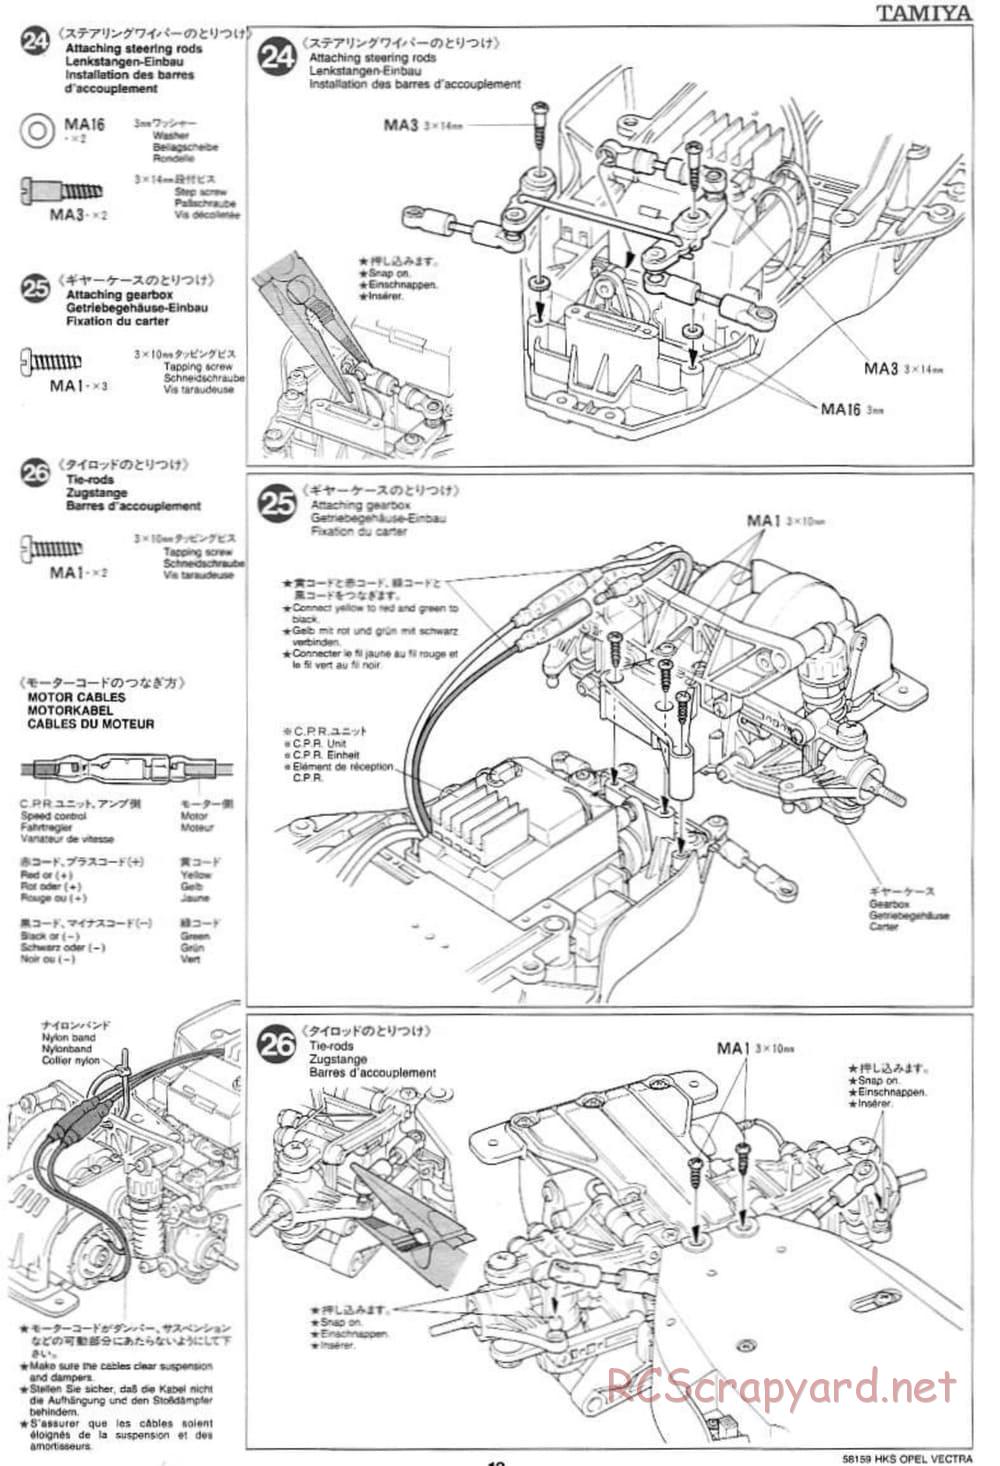 Tamiya - HKS Opel Vectra JTCC - FF-01 Chassis - Manual - Page 13